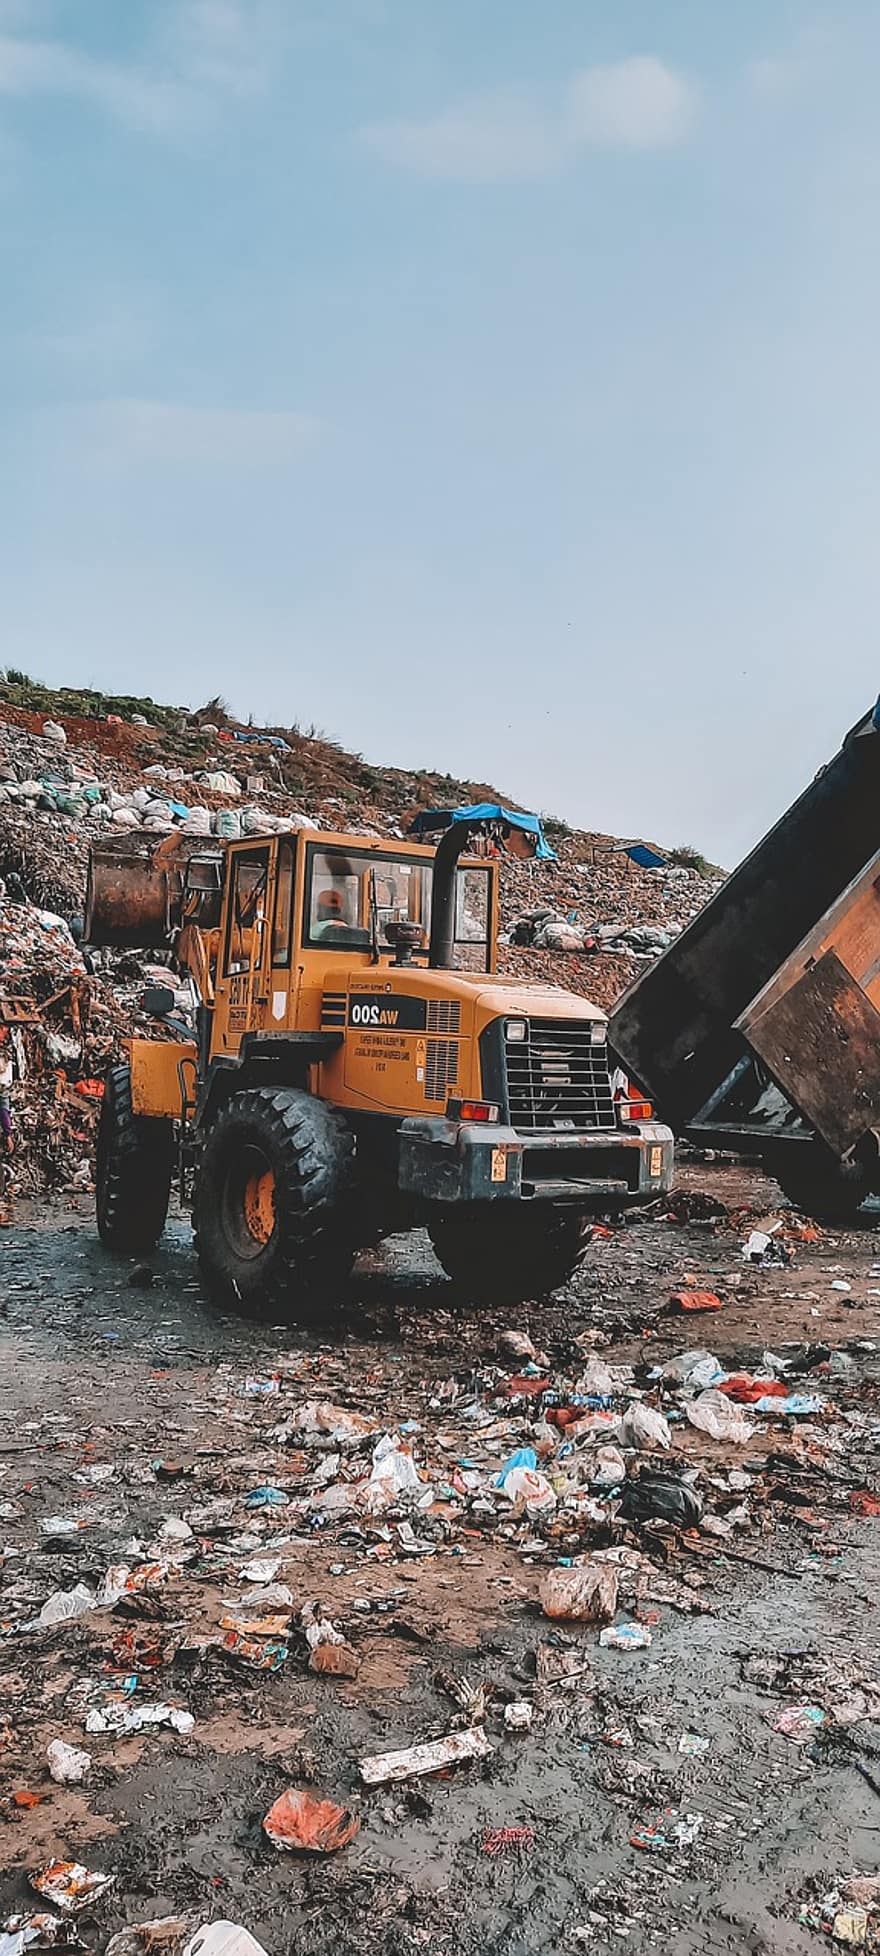 トラクター、ダンプサイト、トラック、ダンプトラック、車両、ゴミ捨て場、バンタルゲバン、インドネシア、ゴミ、ジャンク、Tpa Bantargebang